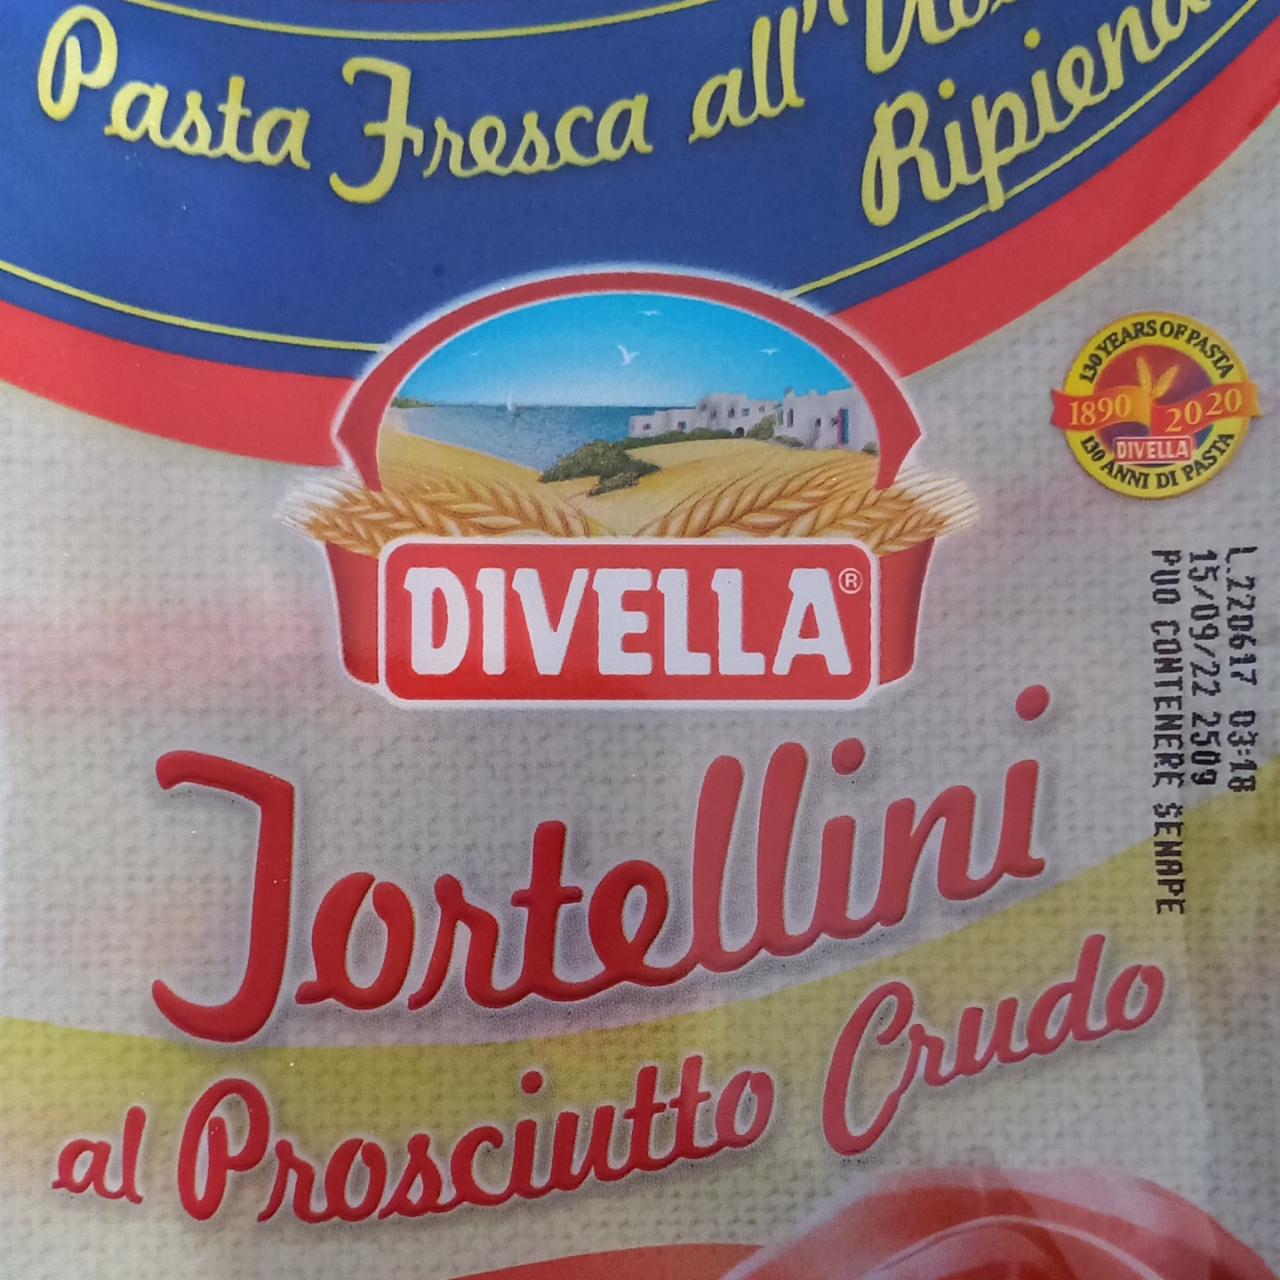 Fotografie - Tortellini al Prosciutto Crudo Divella